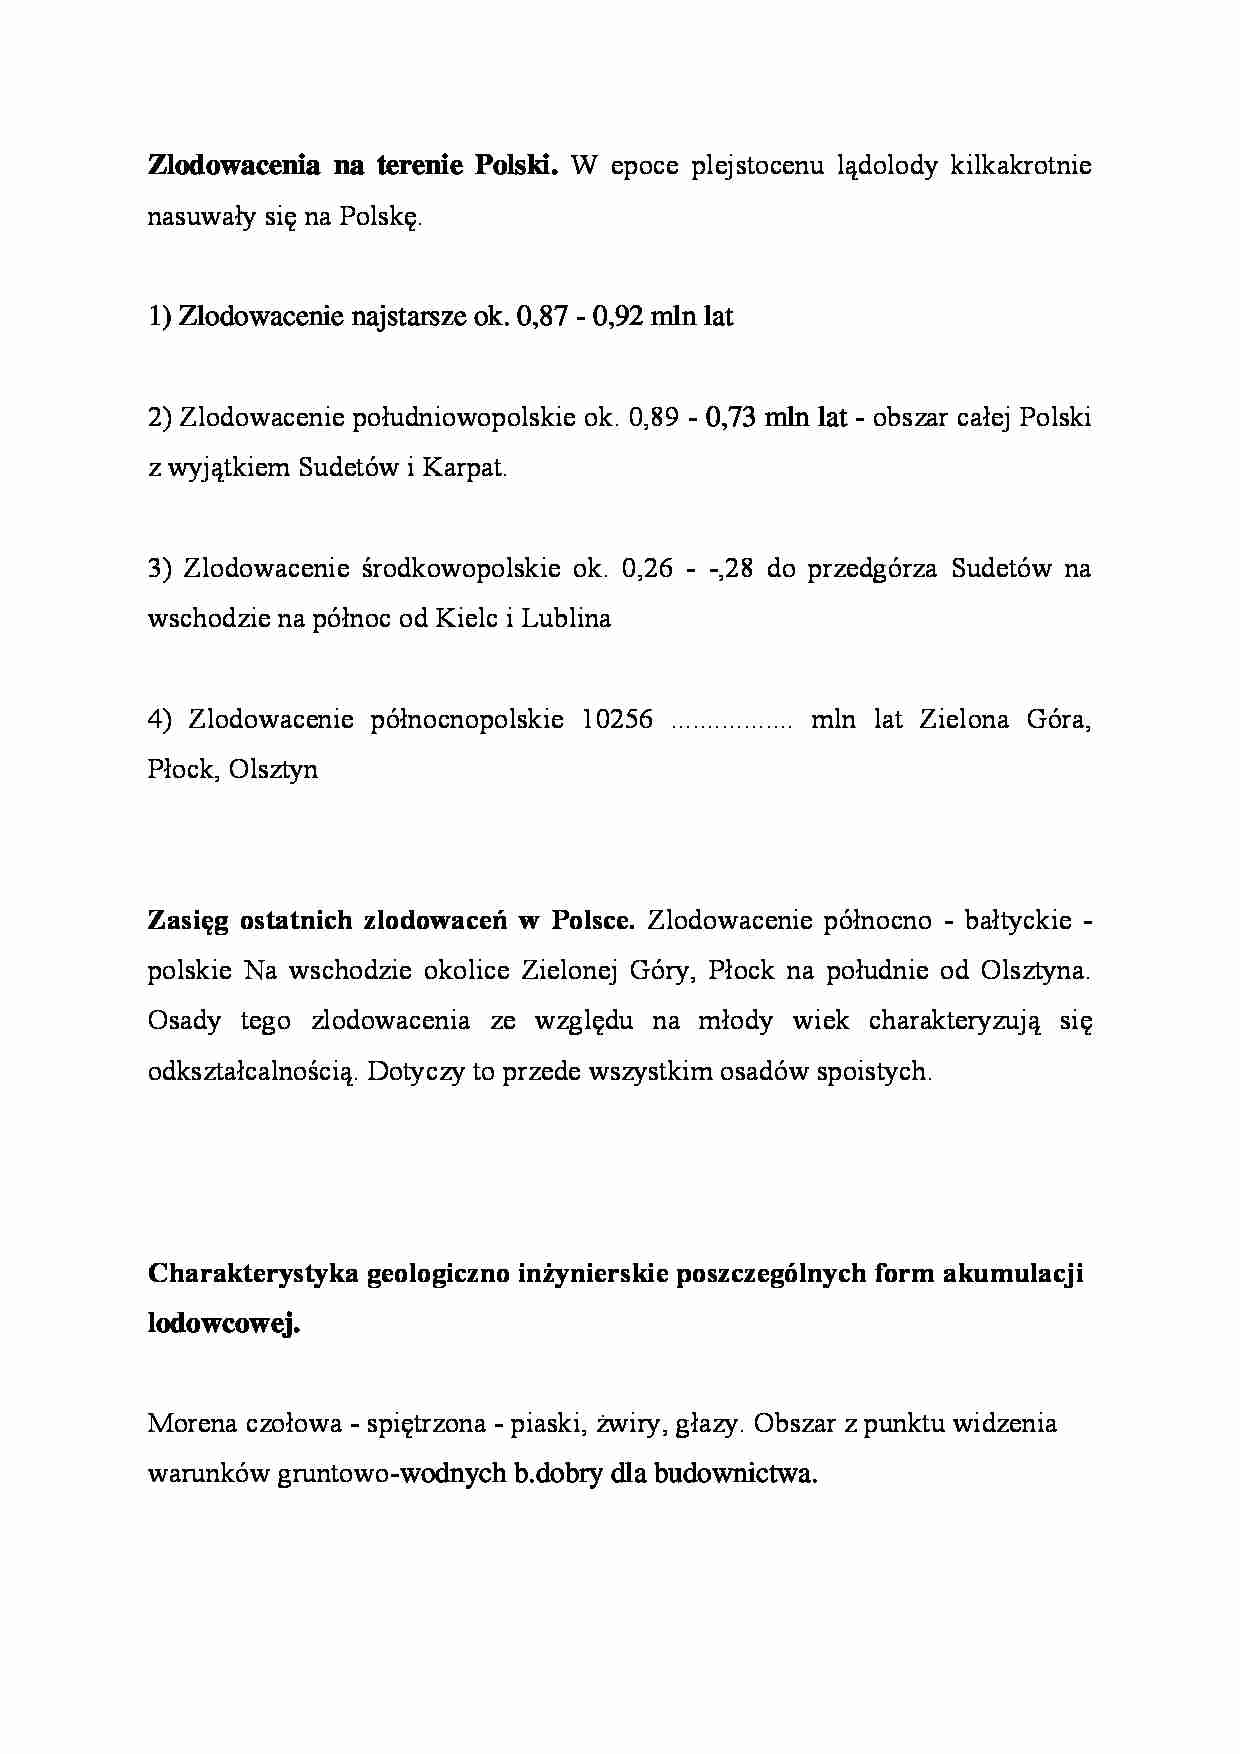 Zlodowacenia na terenie Polski - strona 1